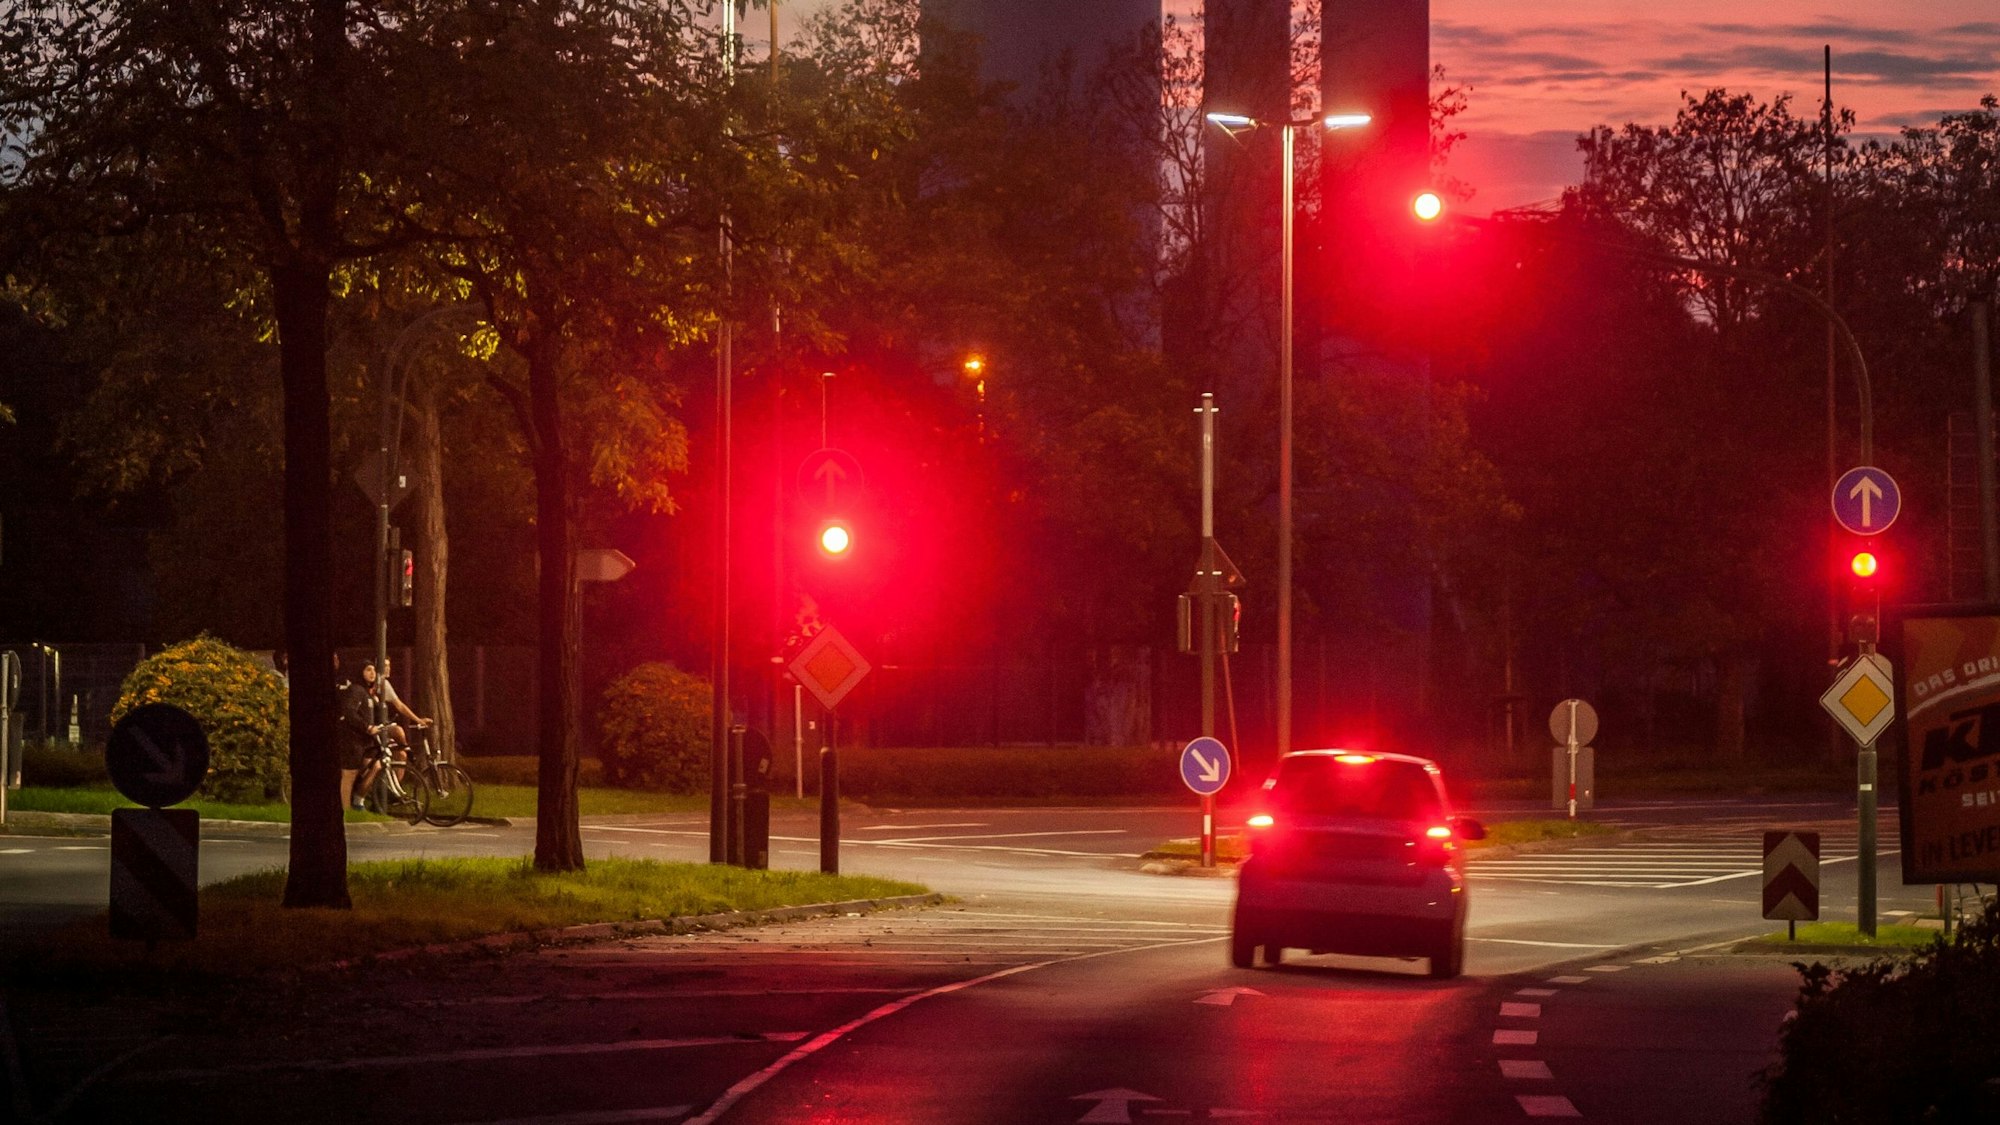 Im Abendlicht steht ein Kleinwagen mit rot leuchtenden Bremslichtern an einer roten Ampel. Dahinter ist der EVL-Turm zu sehen.